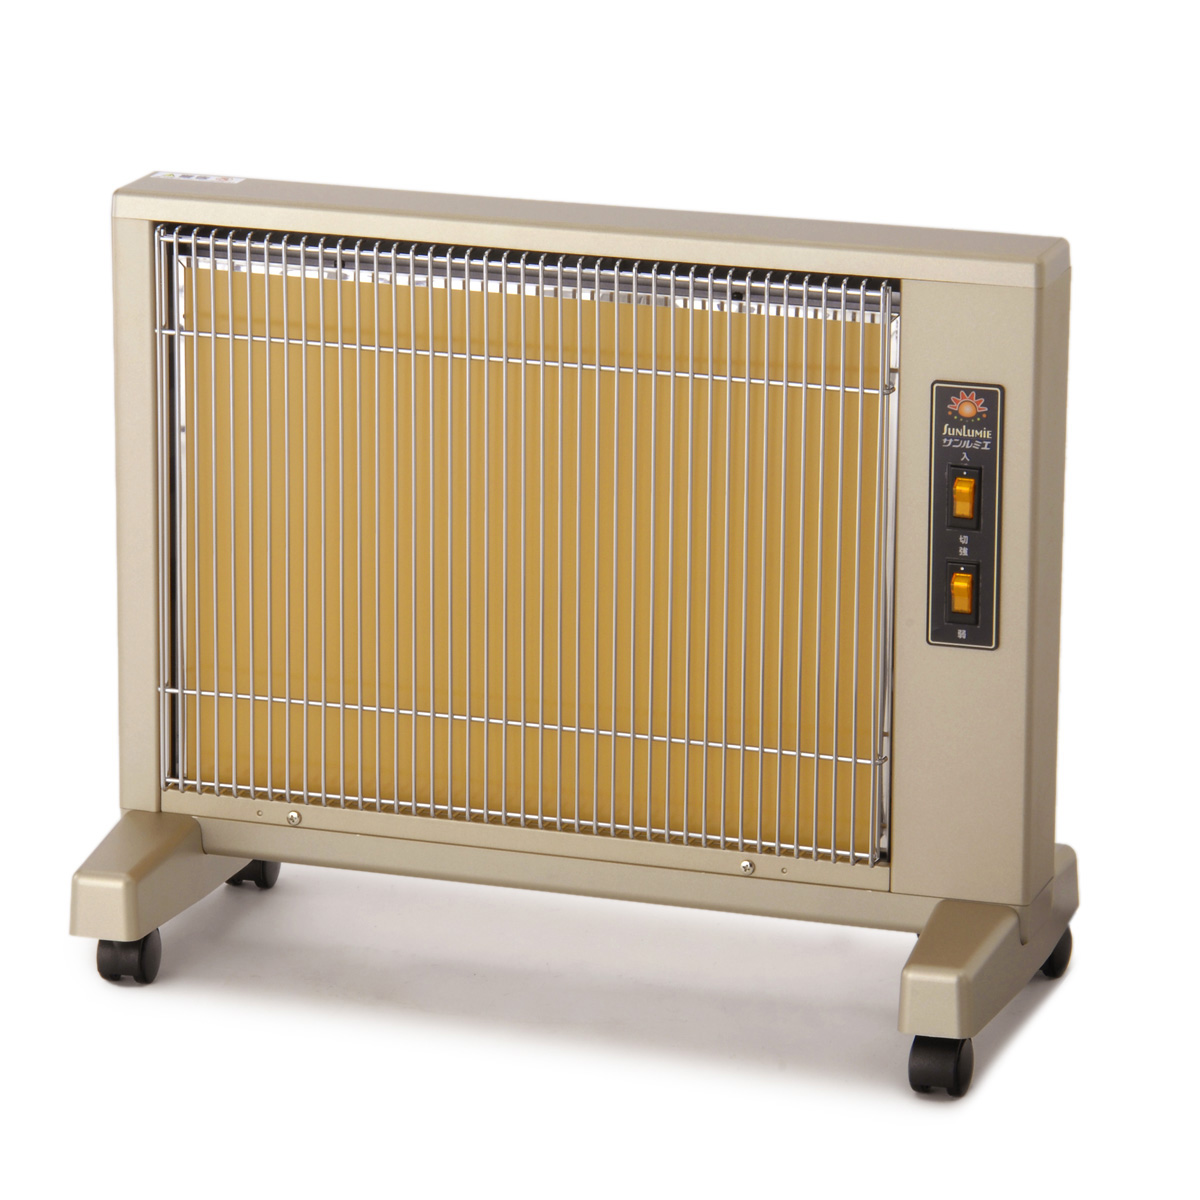 遠赤外線暖房器 サンルミエキュート 3年保証 2台セット - QVC.jp